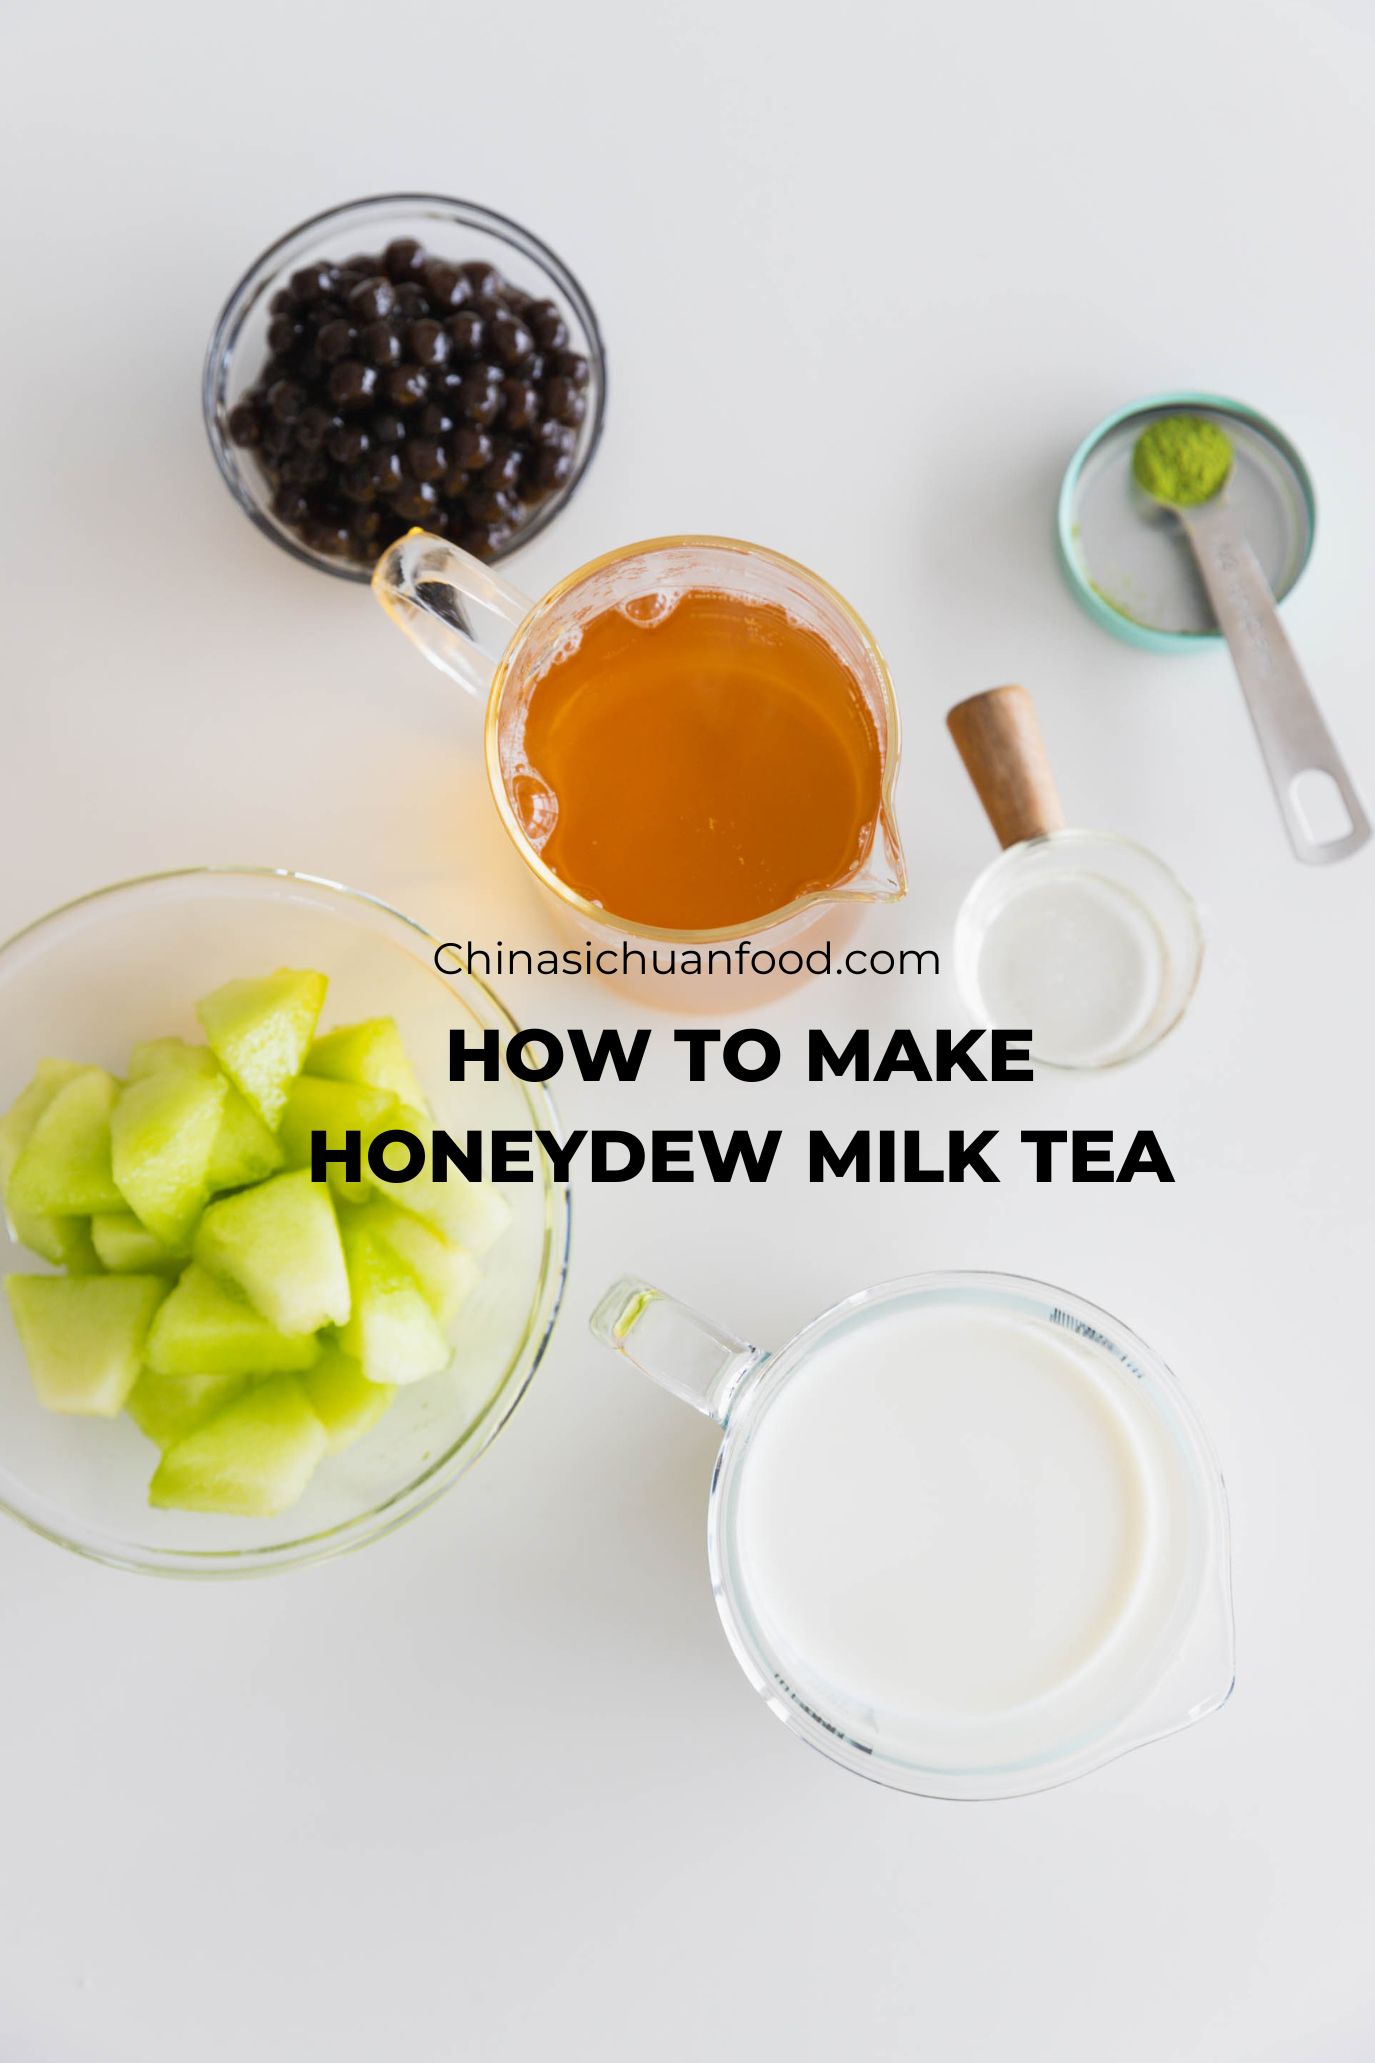 Ingredients for honeydew milk tea